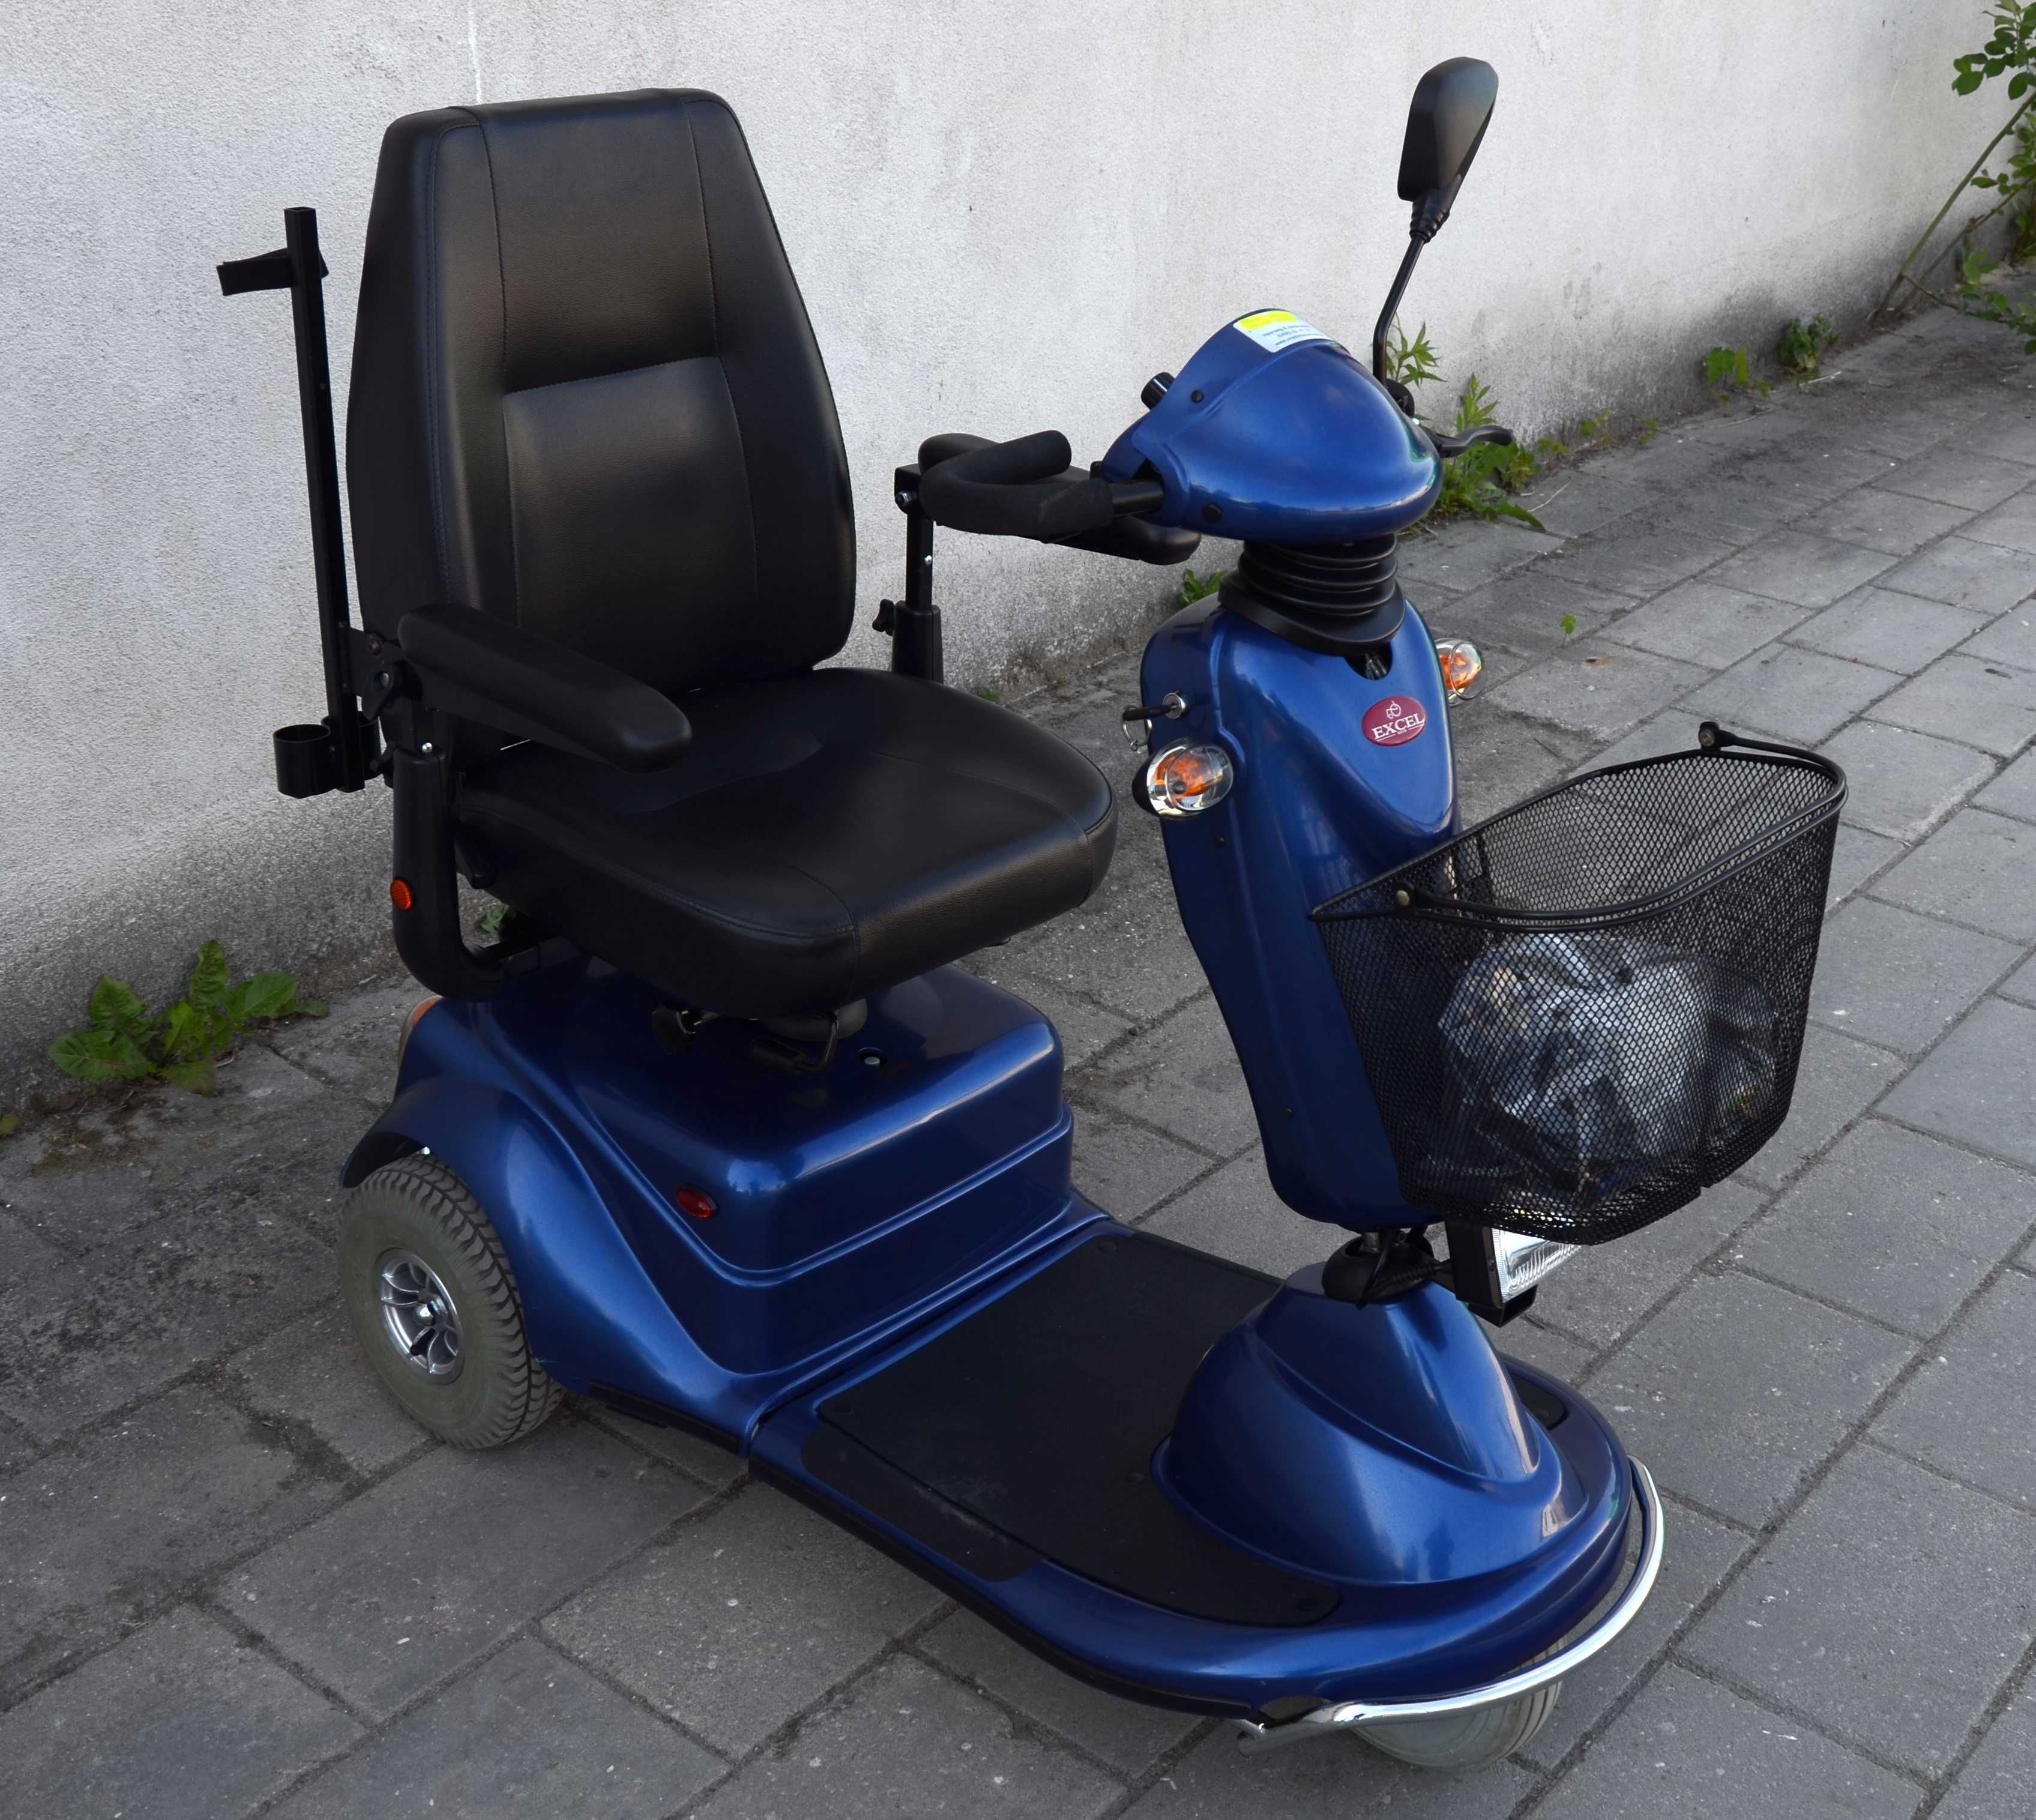 Elektryczny wózek inwalidzki skuter trójkołowy EXEL GALAXY navigator